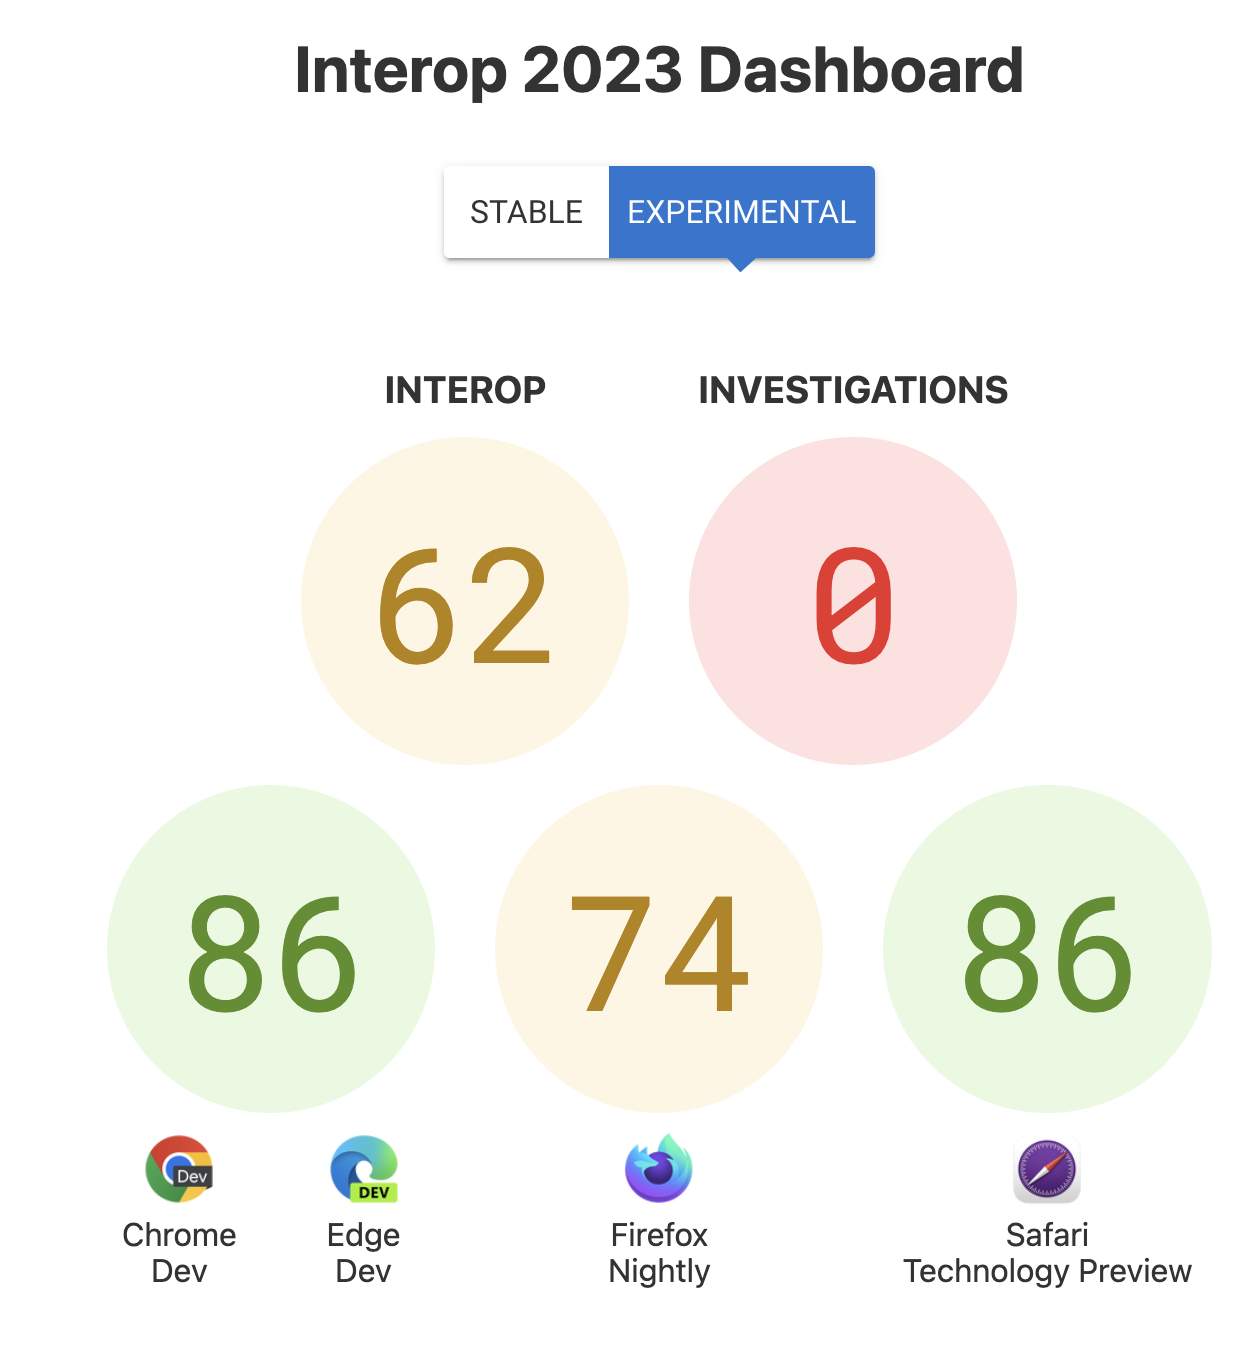 Skor untuk Interop keseluruhan: 62, Investigasi: 0, dan skor per browser - 86 untuk Chrome dan Edge, 74 untuk Firefox, 86 untuk Safari Technology Preview.